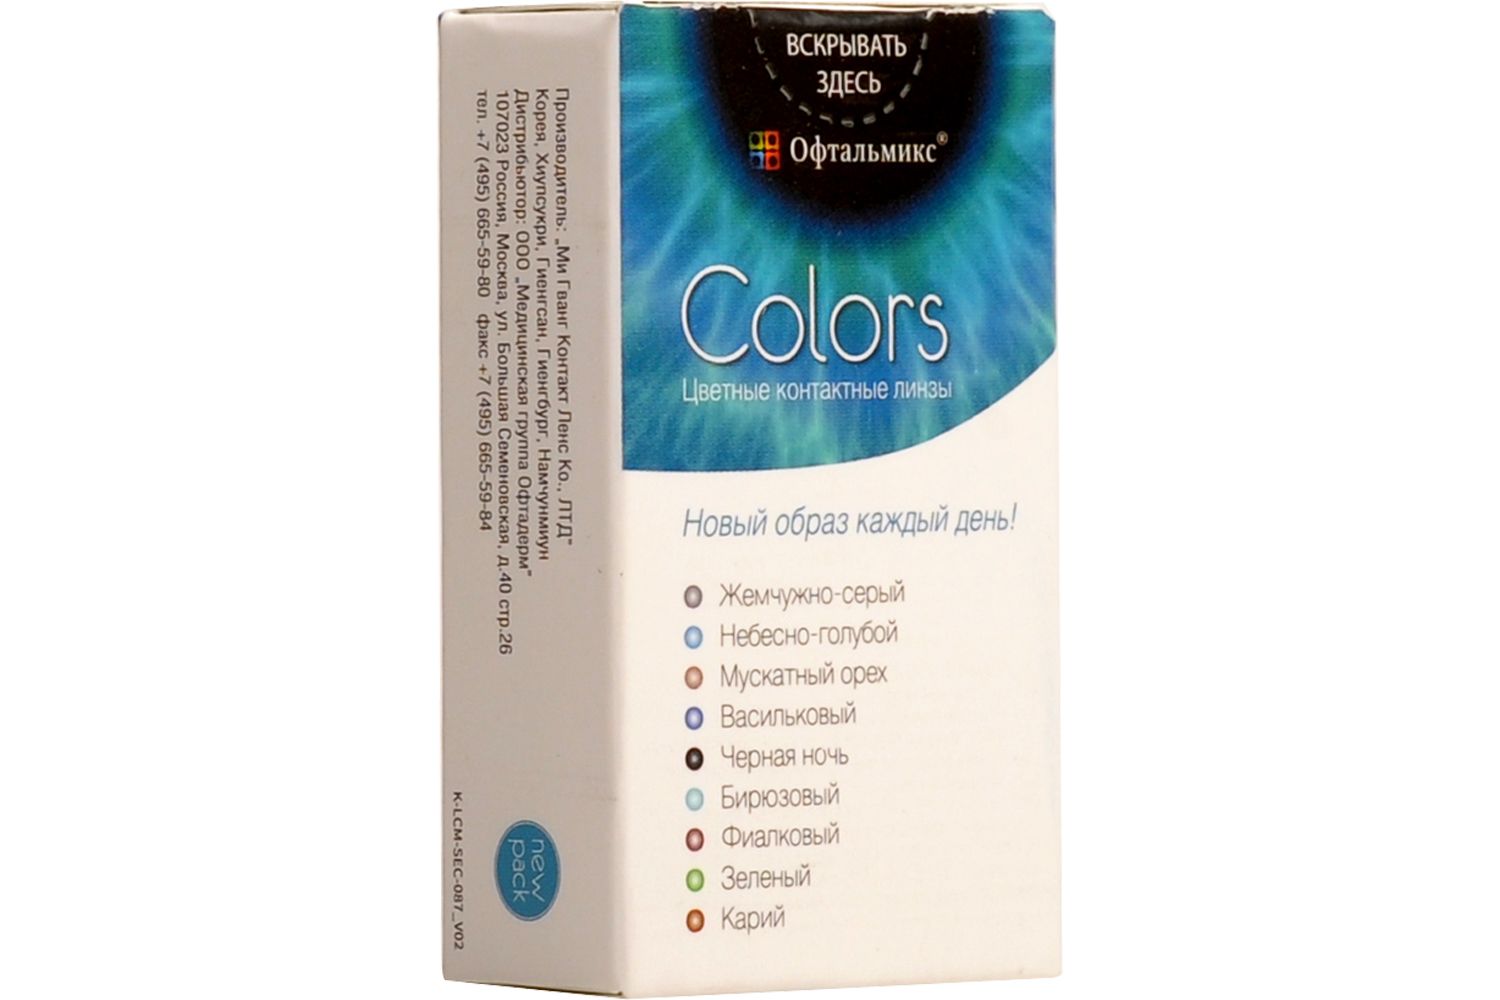 Купить Colors 2 линзы, Цветные контактные линзы Офтальмикс Colors, 2 шт. PWR -3, 00, R 8.6, Cloud